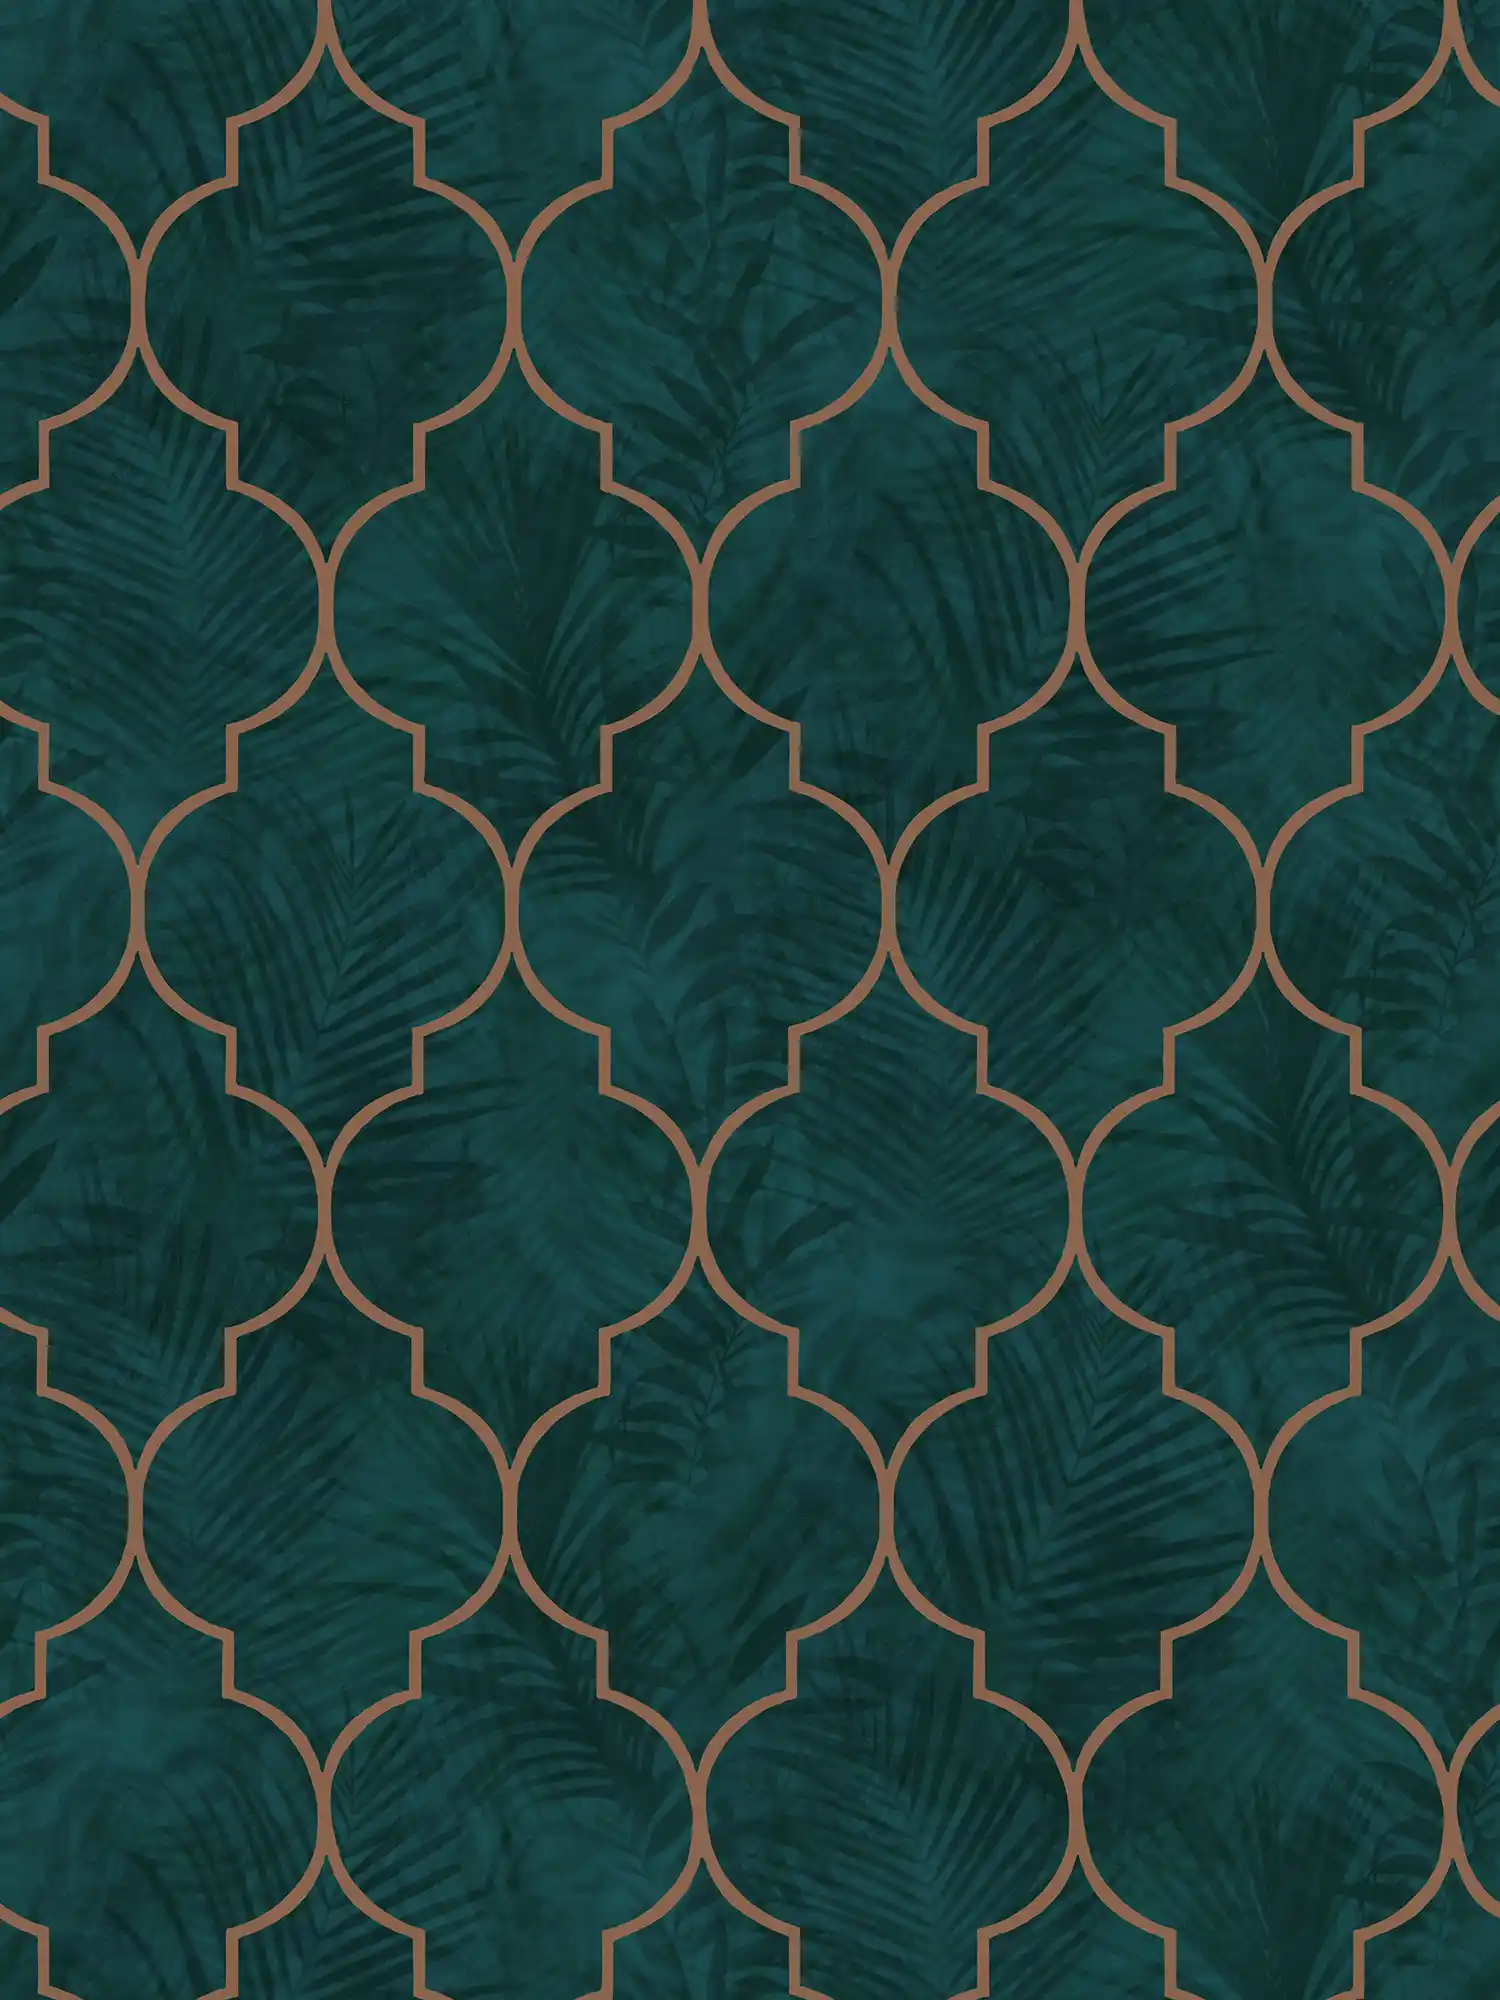 Fliesentapete mit Ornament und Blättermuster – Grün, Türkis, Braun
